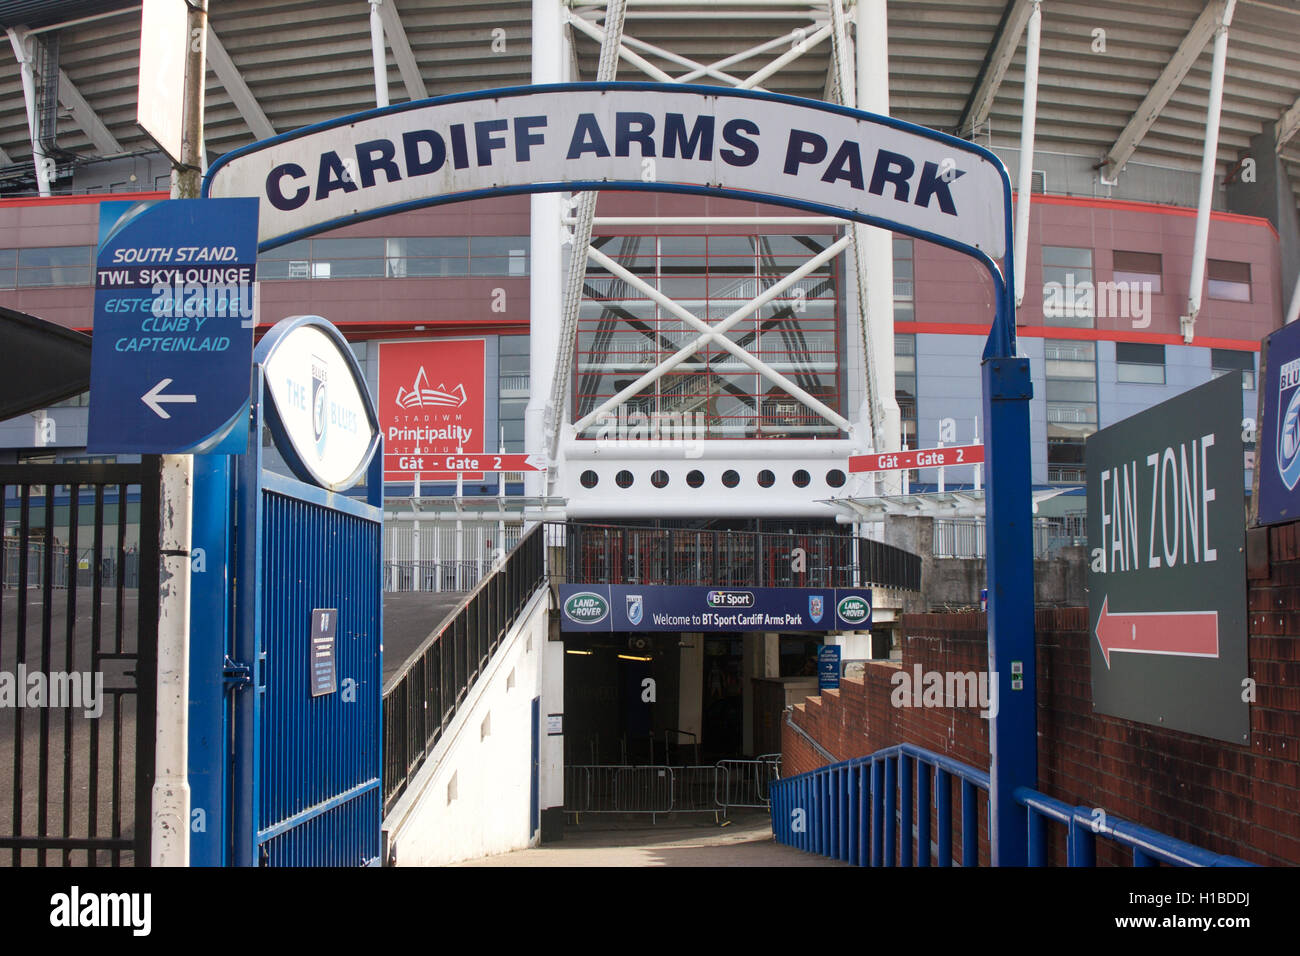 Cardiff Arms Park, noto anche come il Parco di armi e il BT Sport Cardiff Arms Park per ragioni di sponsorizzazione è meglio conosciuto come un tappeto Foto Stock